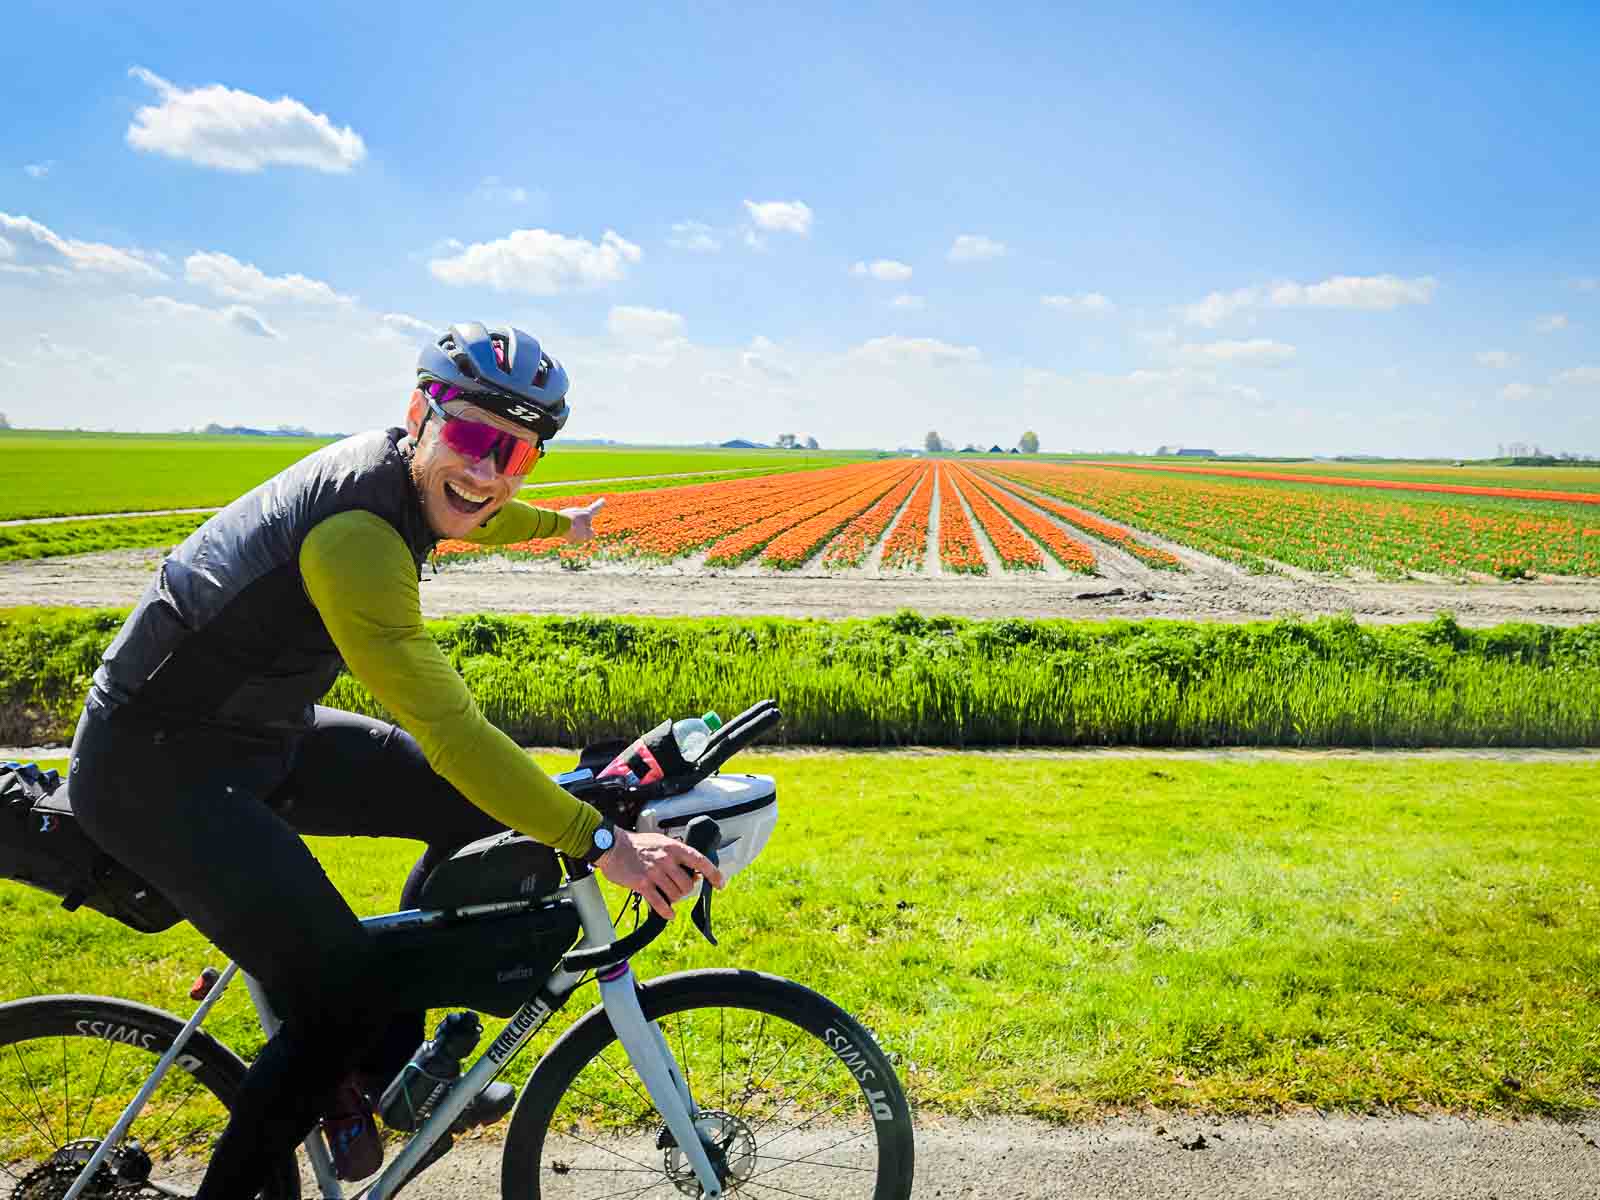 Ein Teilnehmer des Race arouund the Netherlands freut sich über den Anblick bunter Blumen und zeigt darauf